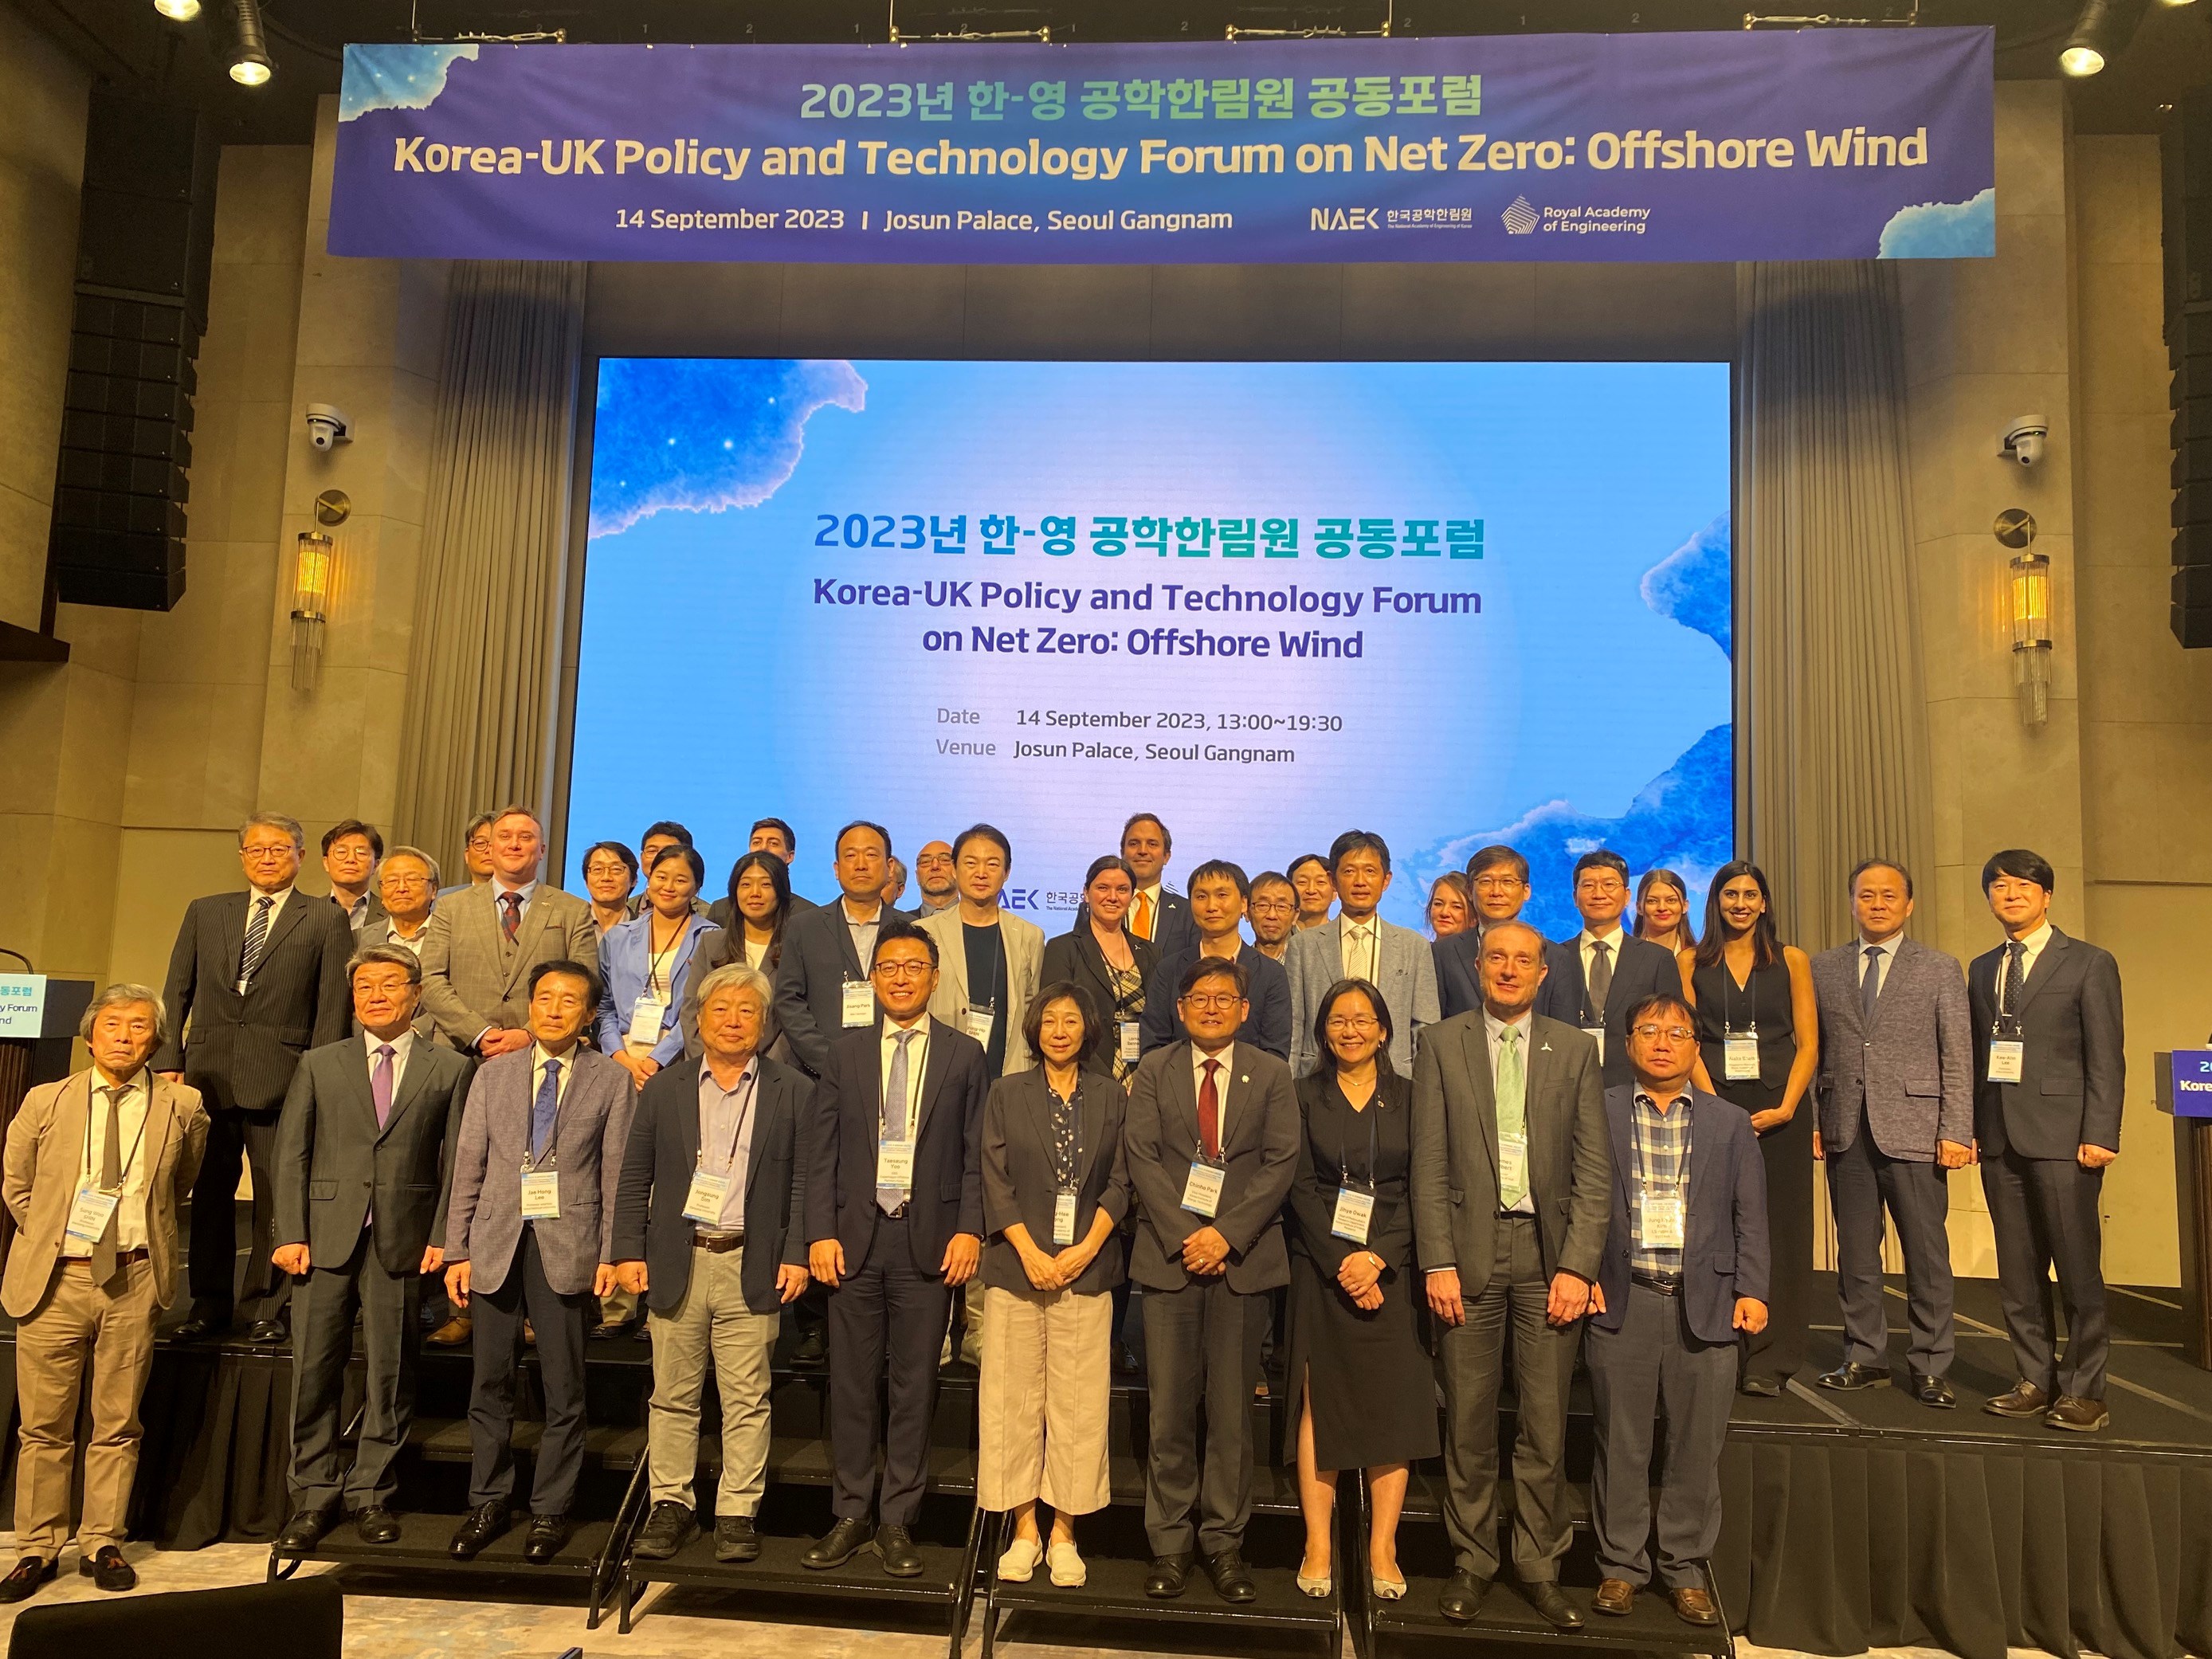 Korea-UK Policy and Technology Forum on Net Zero